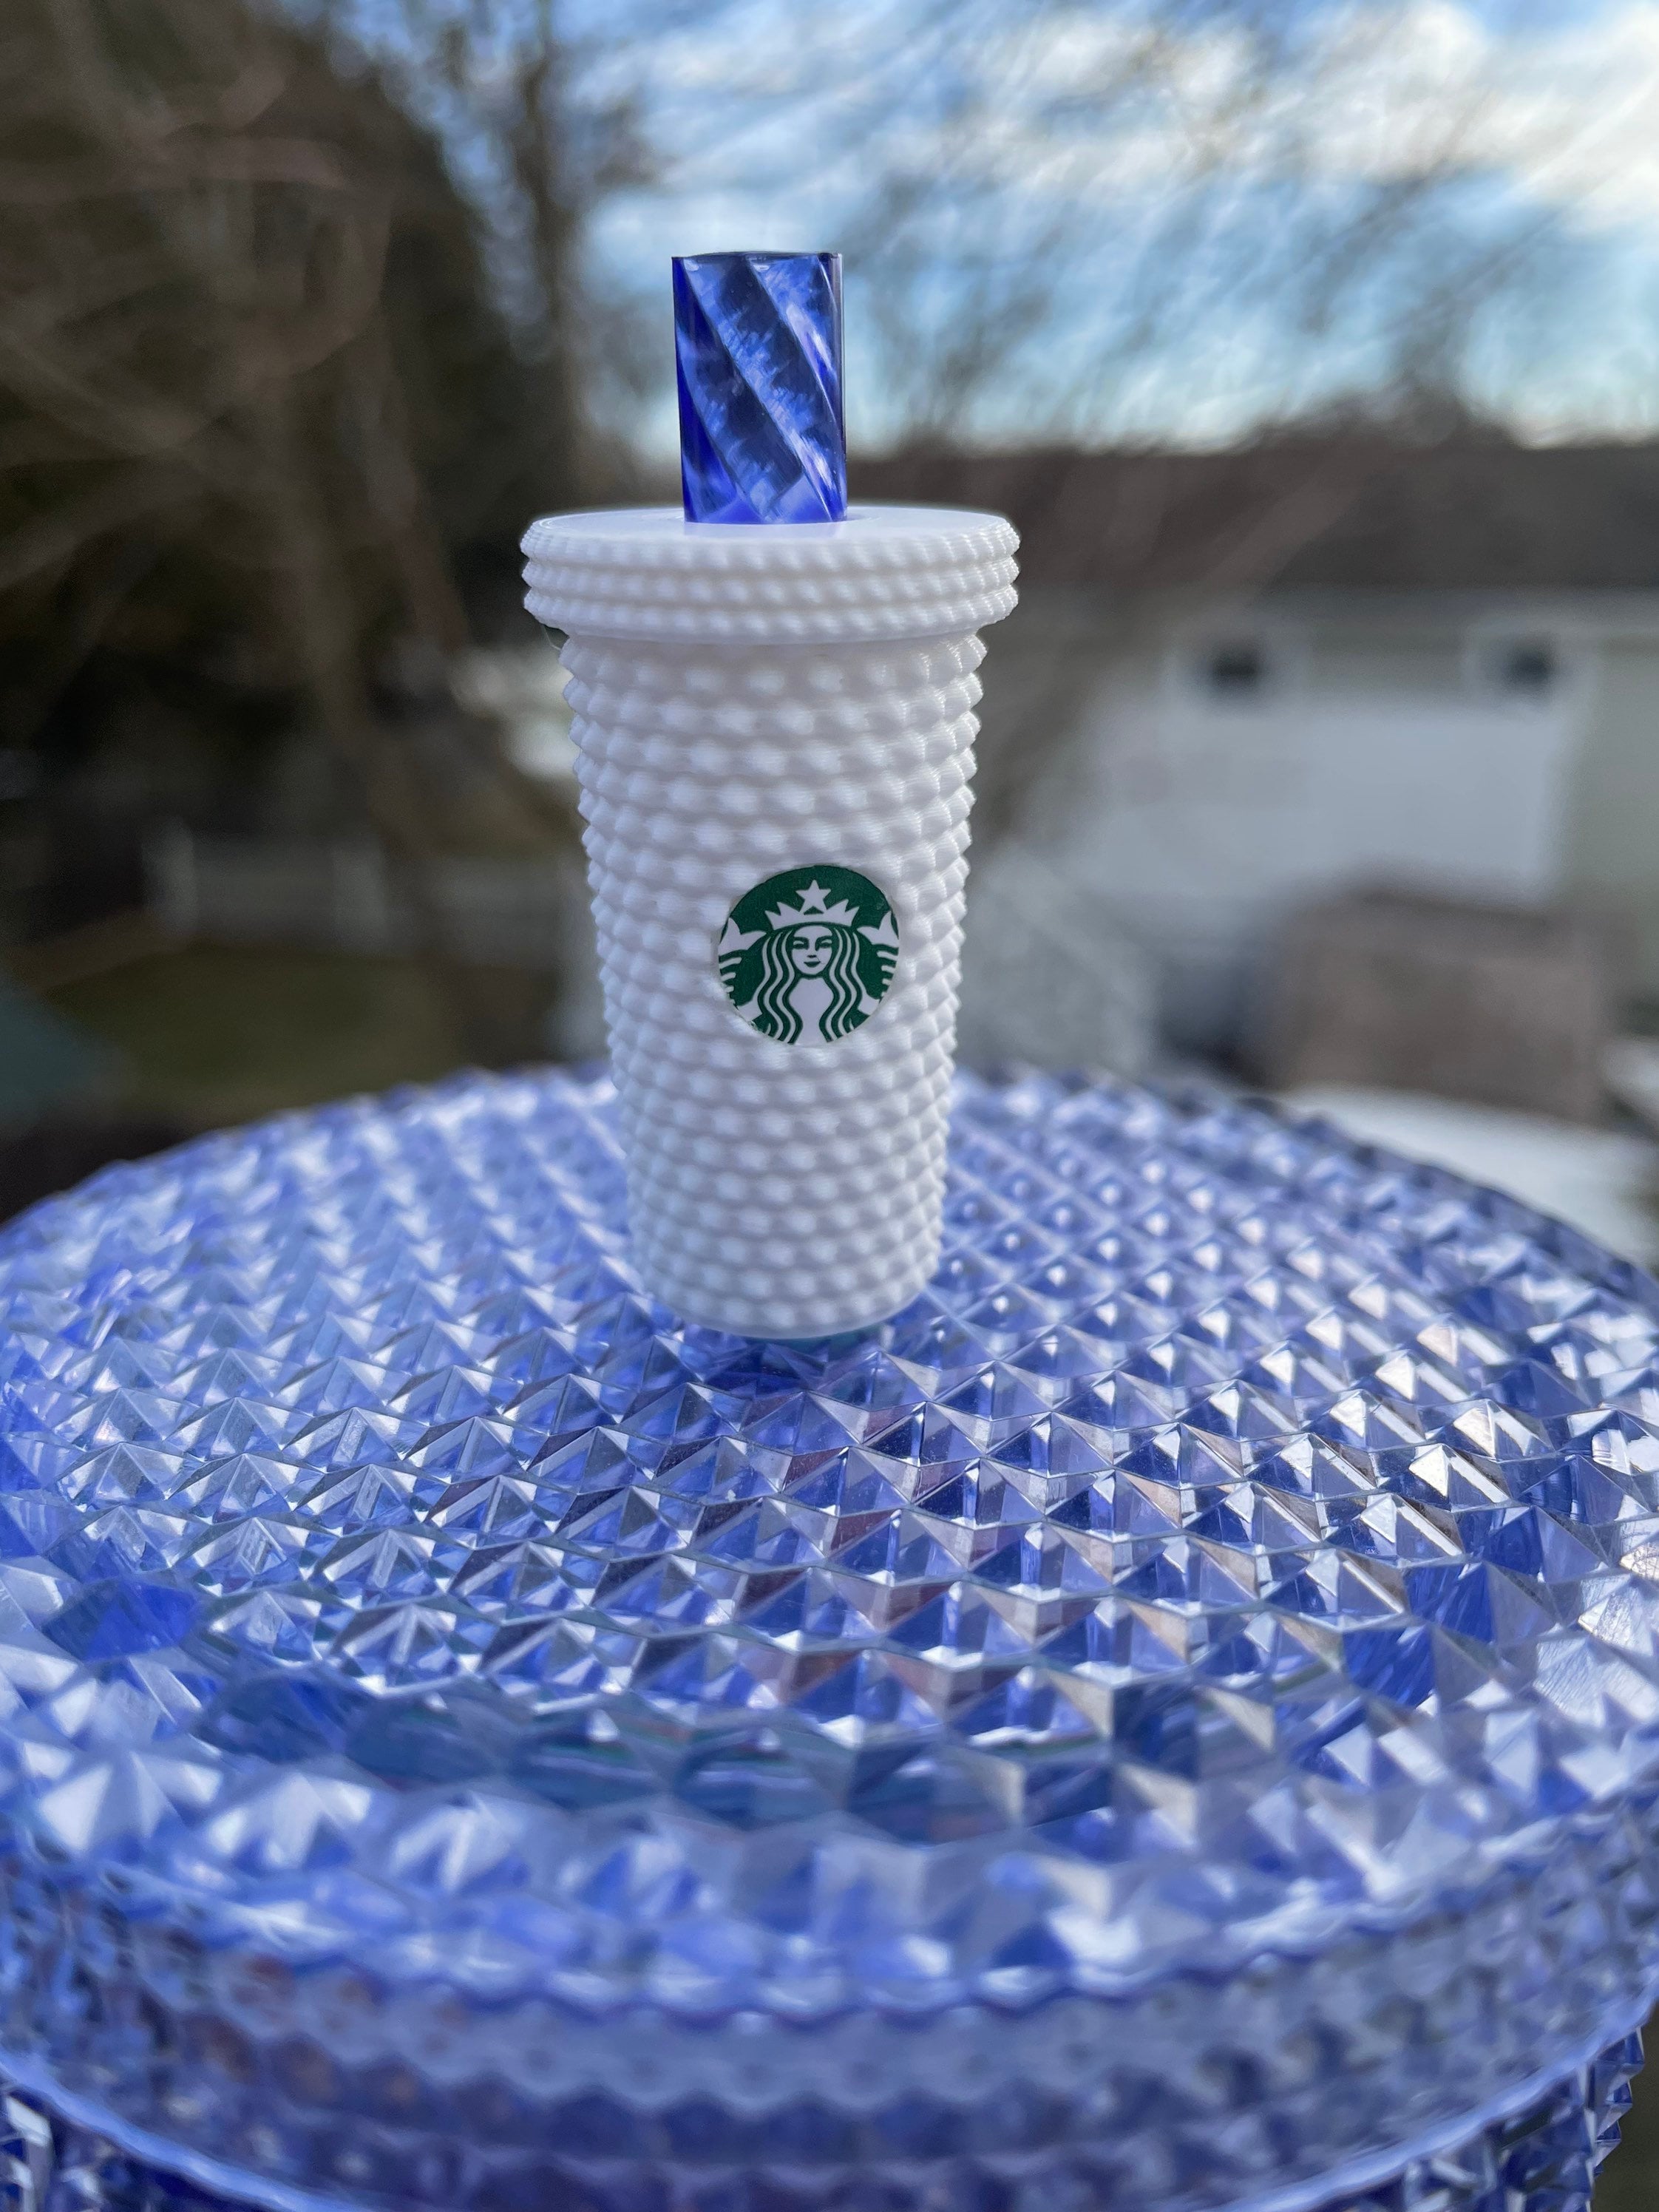 Starbucks Inspired Miniature Studded Tumbler Straw Cover 